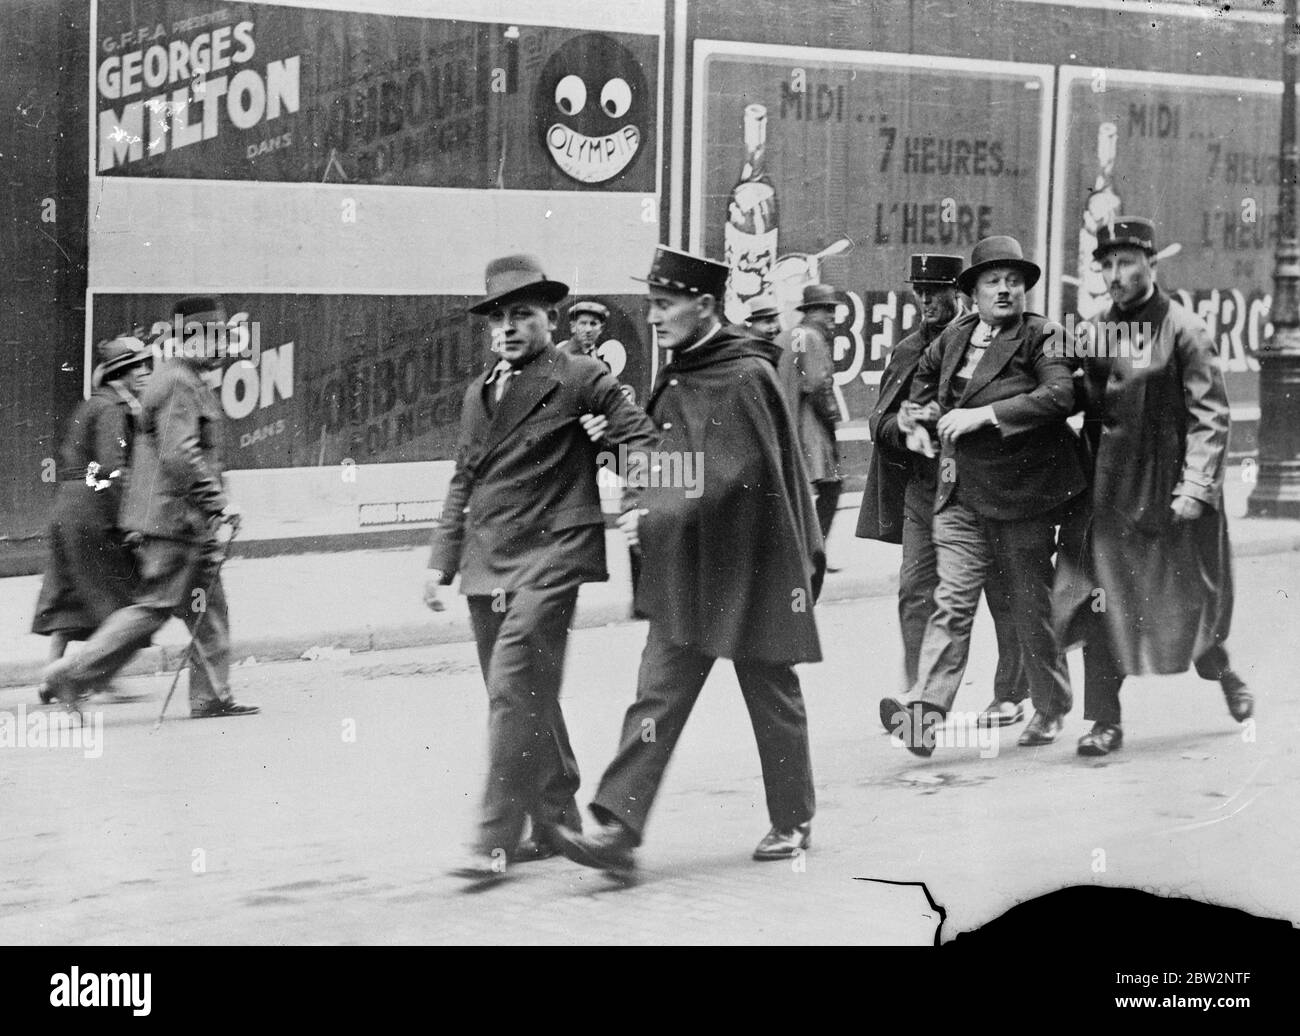 1,100 arrestations à Paris émeutes de rue . Près de 1,100 arrestations ont eu lieu à Paris la nuit dernière, lors d'une réunion de socialistes et communistes protestant contre les réductions de salaires. La manifestation a été interdite par le gouvernement . Le pire combat a eu lieu dans le quartier de la mairie . Arrêter un des manifestants . 21 avril 1934 Banque D'Images